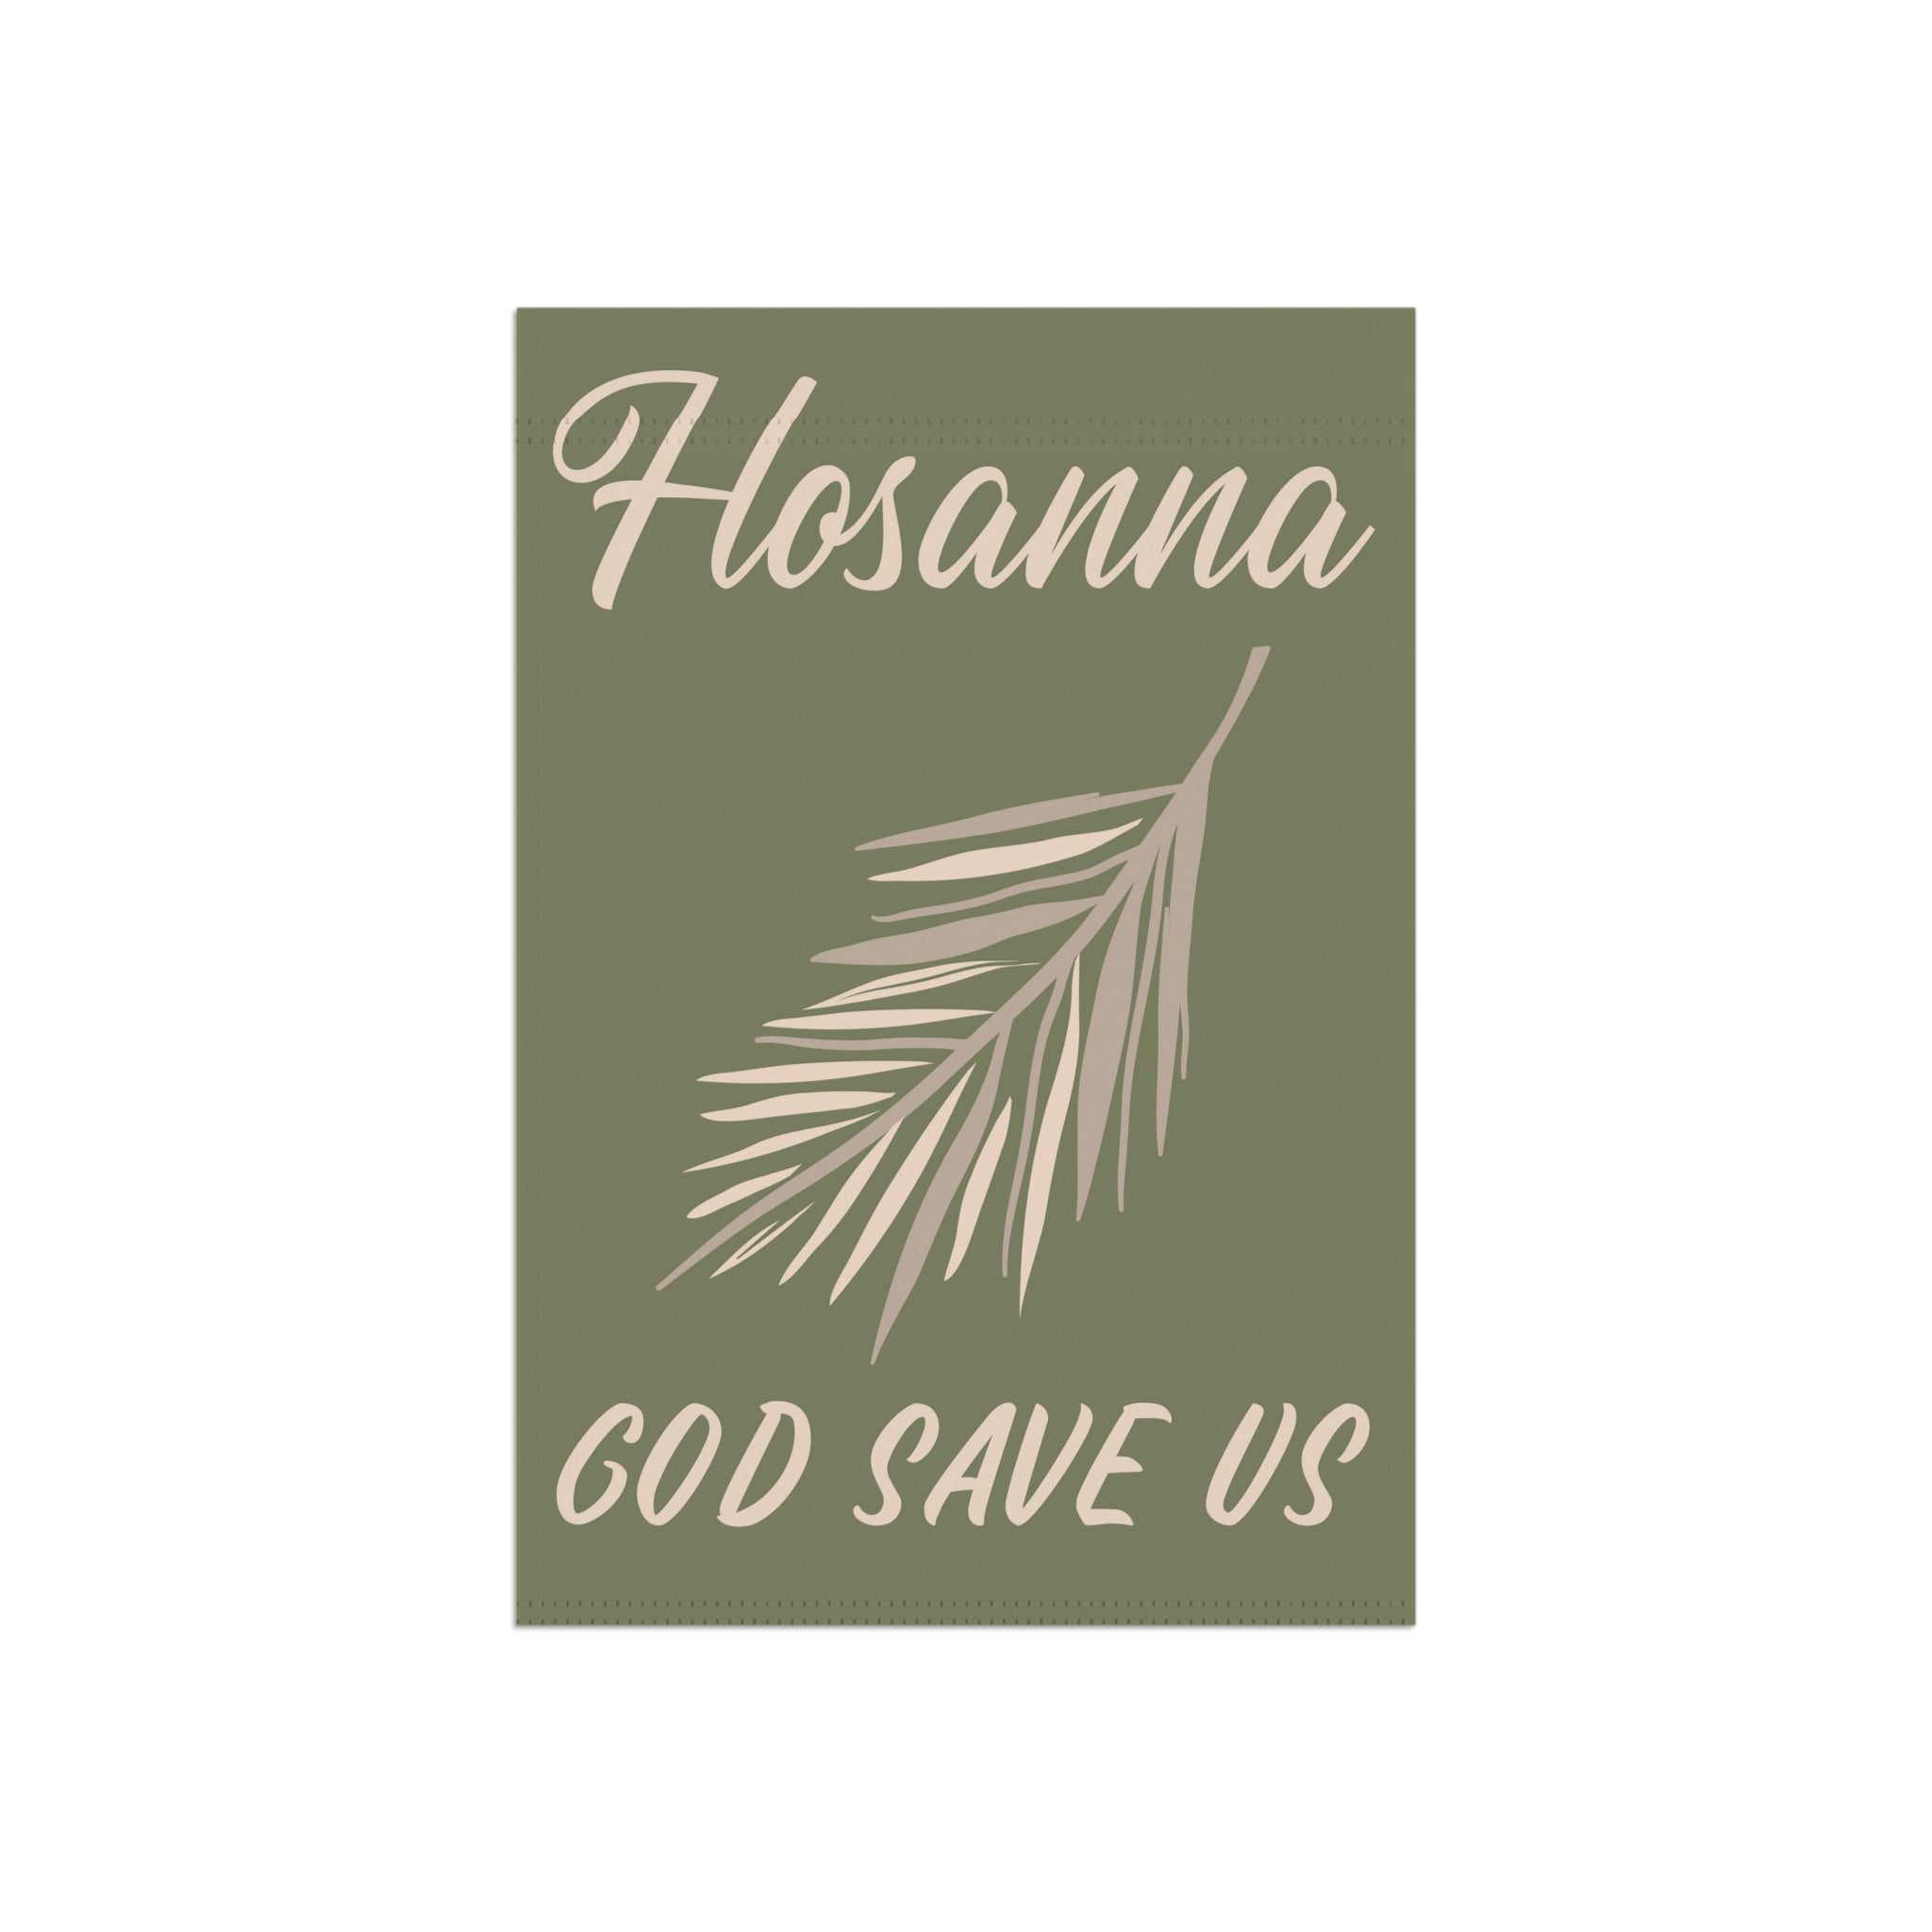 Hosanna - God save us Garden Flag